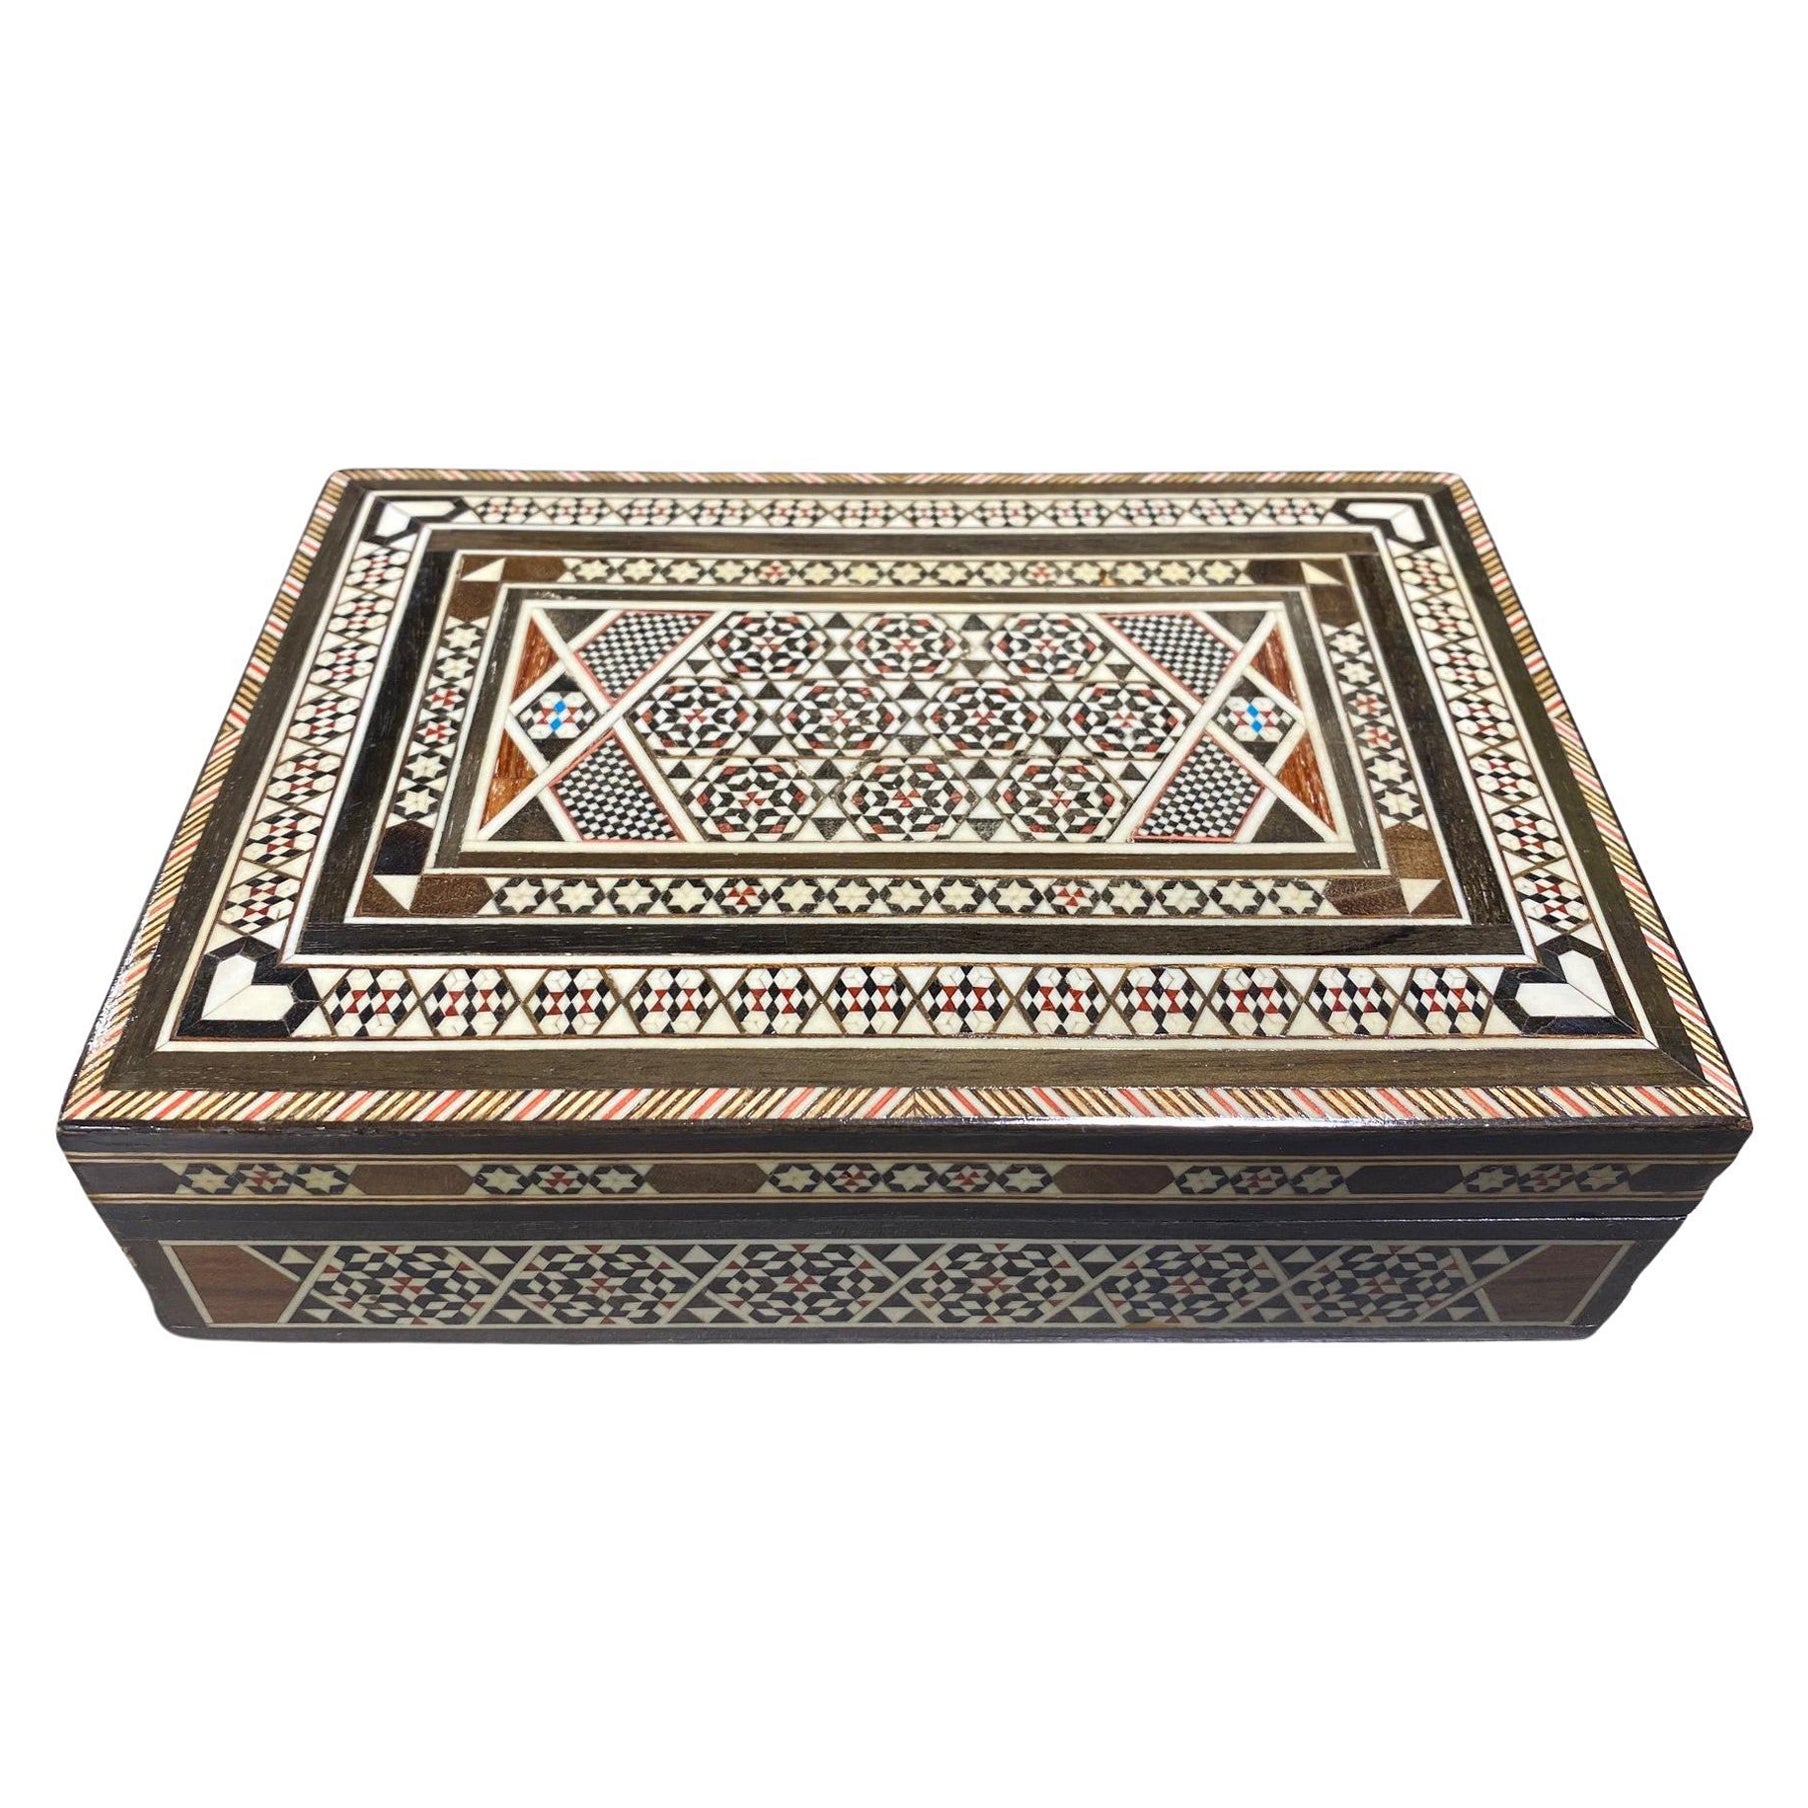 Grande boîte à bijoux marocaine mauresque du Moyen-Orient en bois incrusté de micro-mosaïque